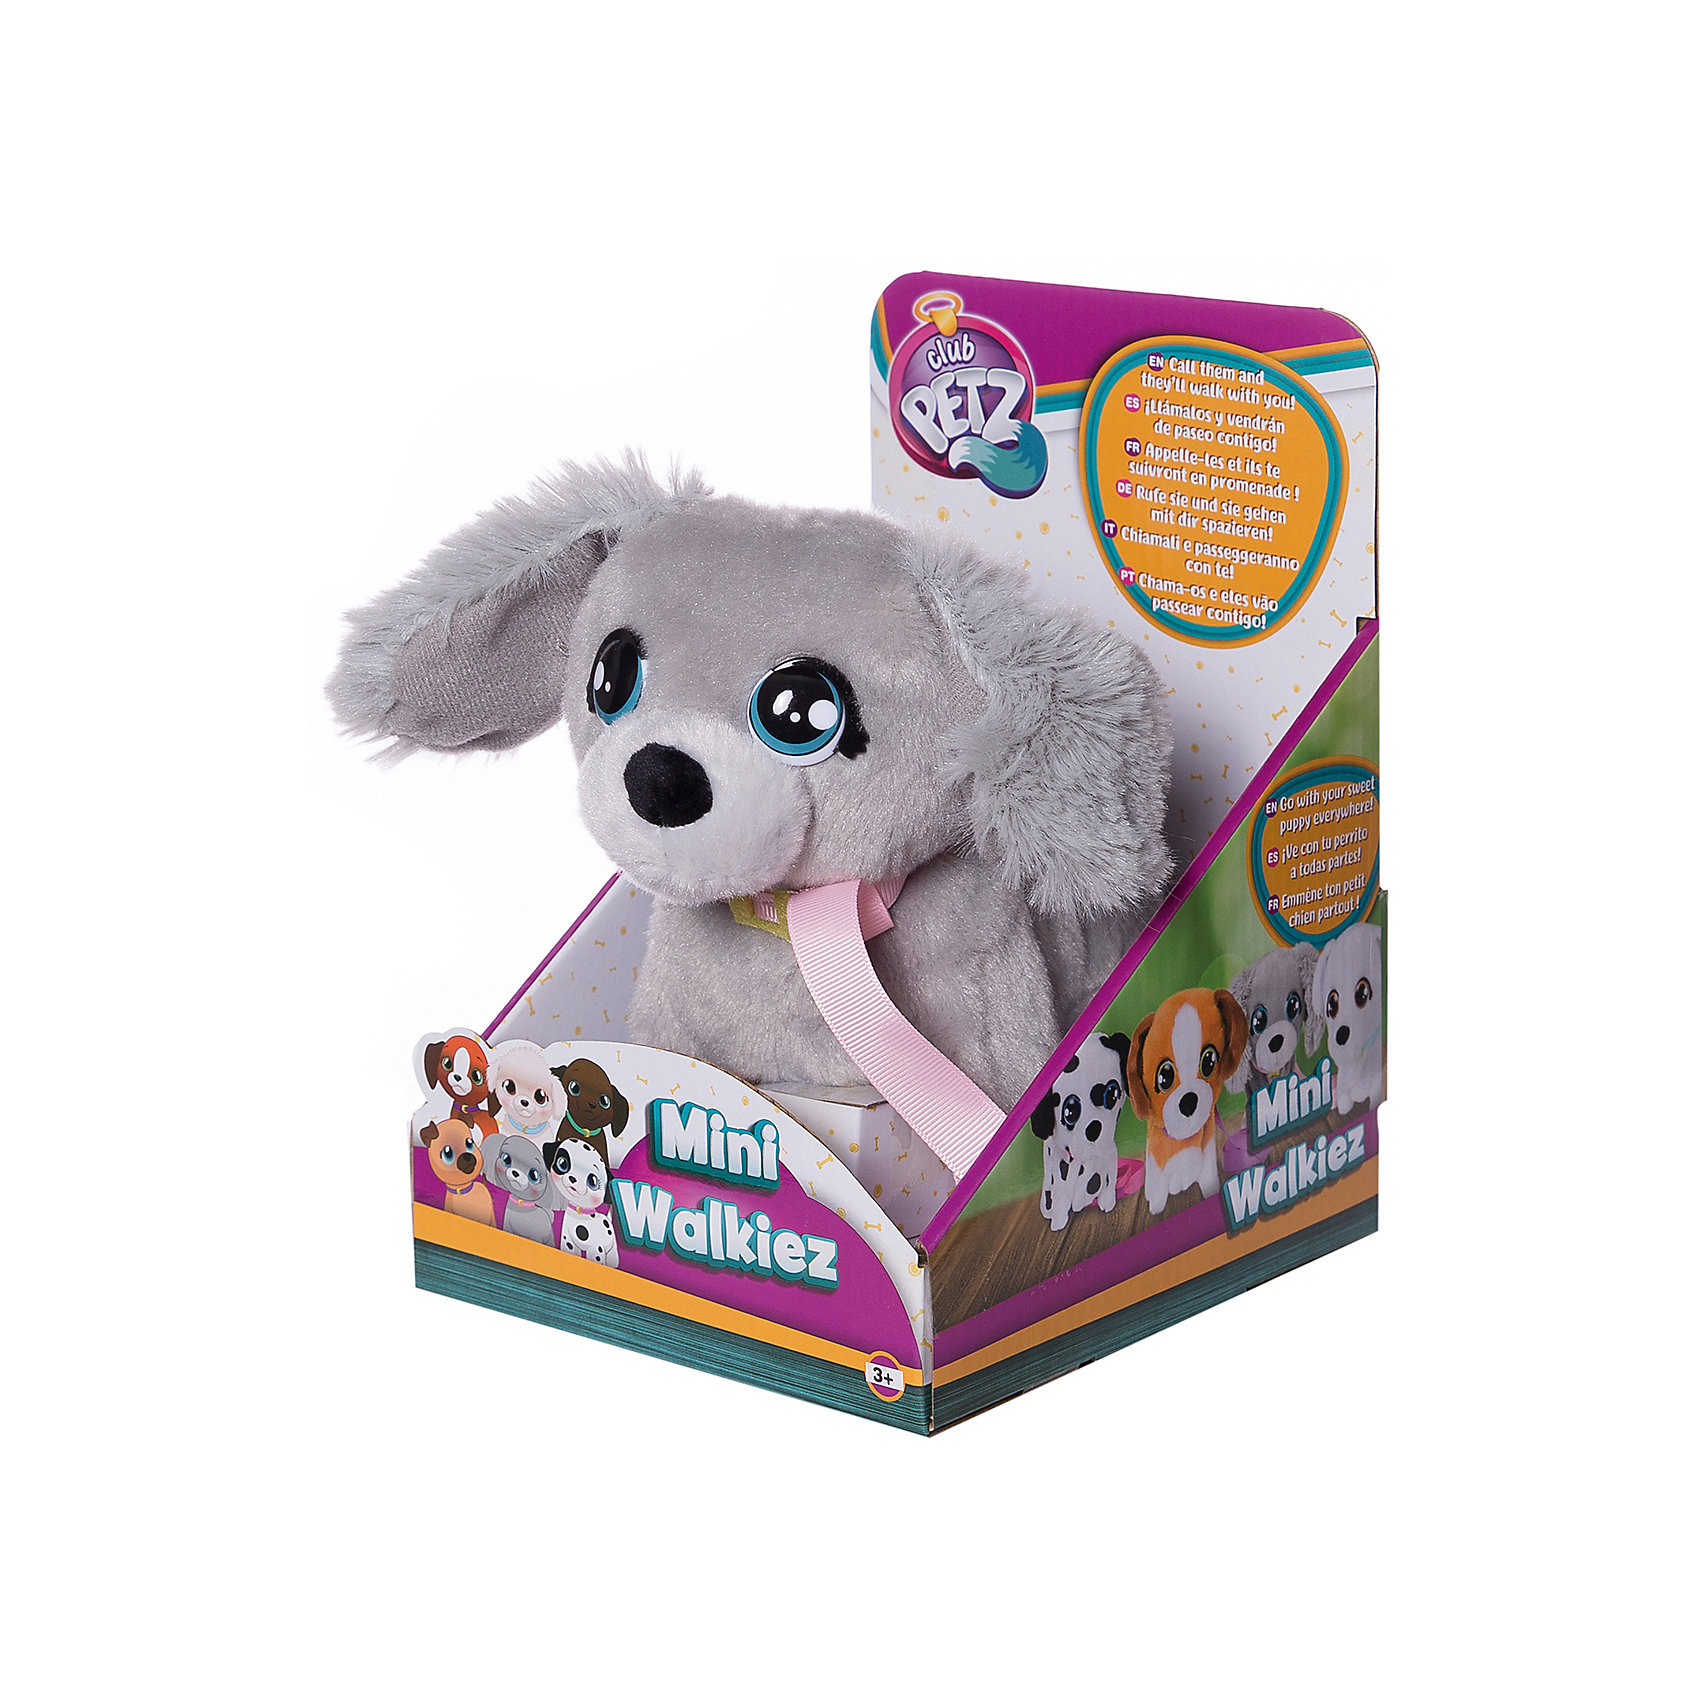 Инерактивный щенок Club Petz Mini Walkiez Poodle IMC Toys 13634101